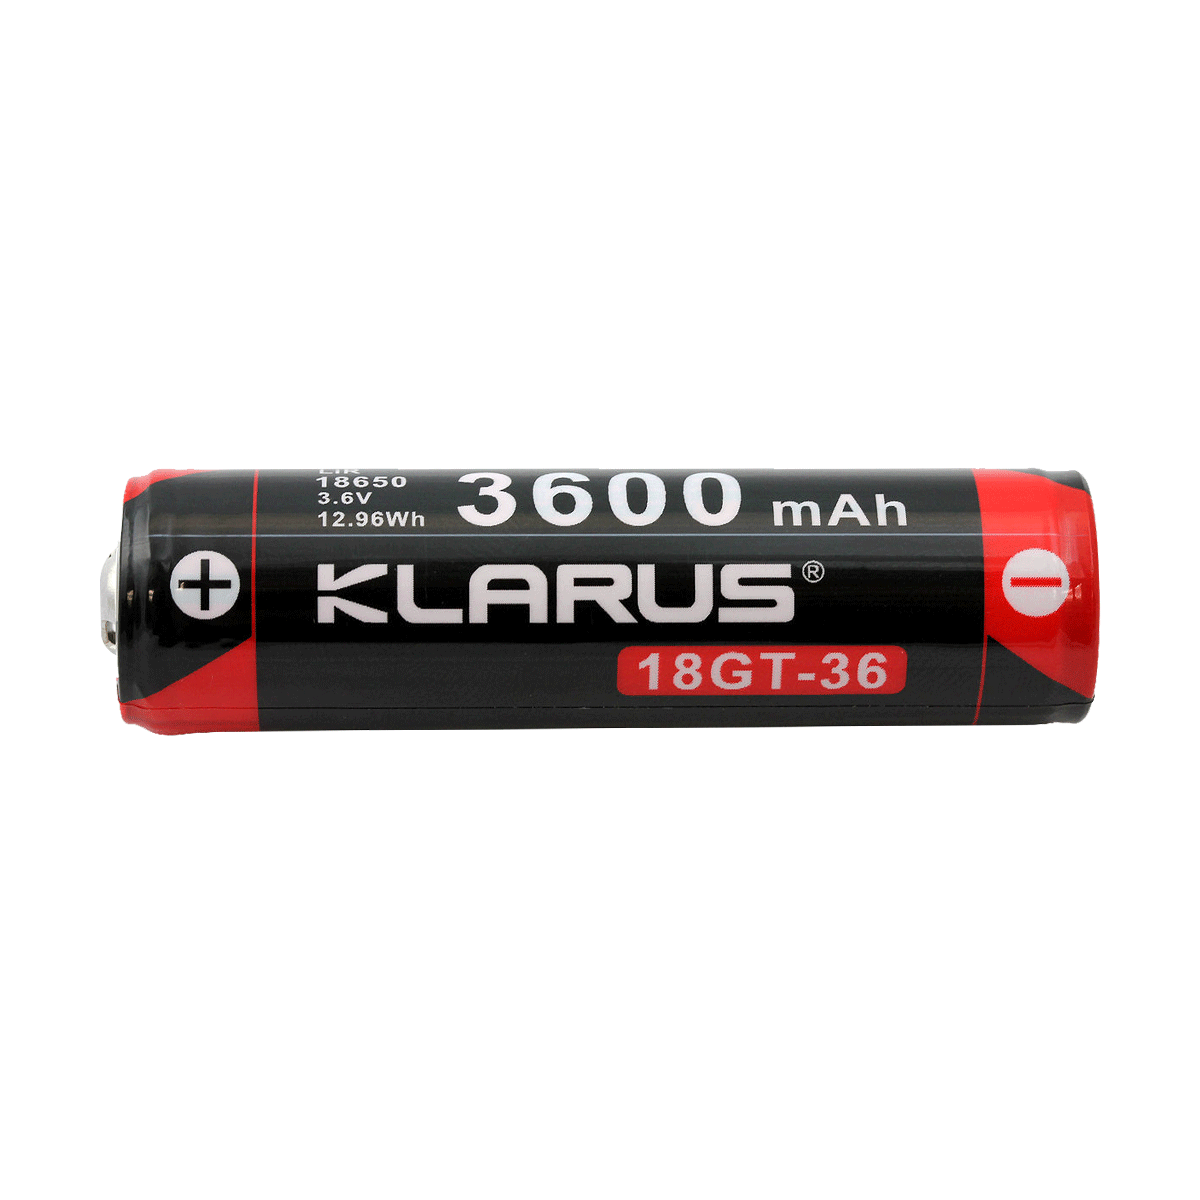 KLARUS 18GT-36 3.6V 18650 3600MAH BATTERY